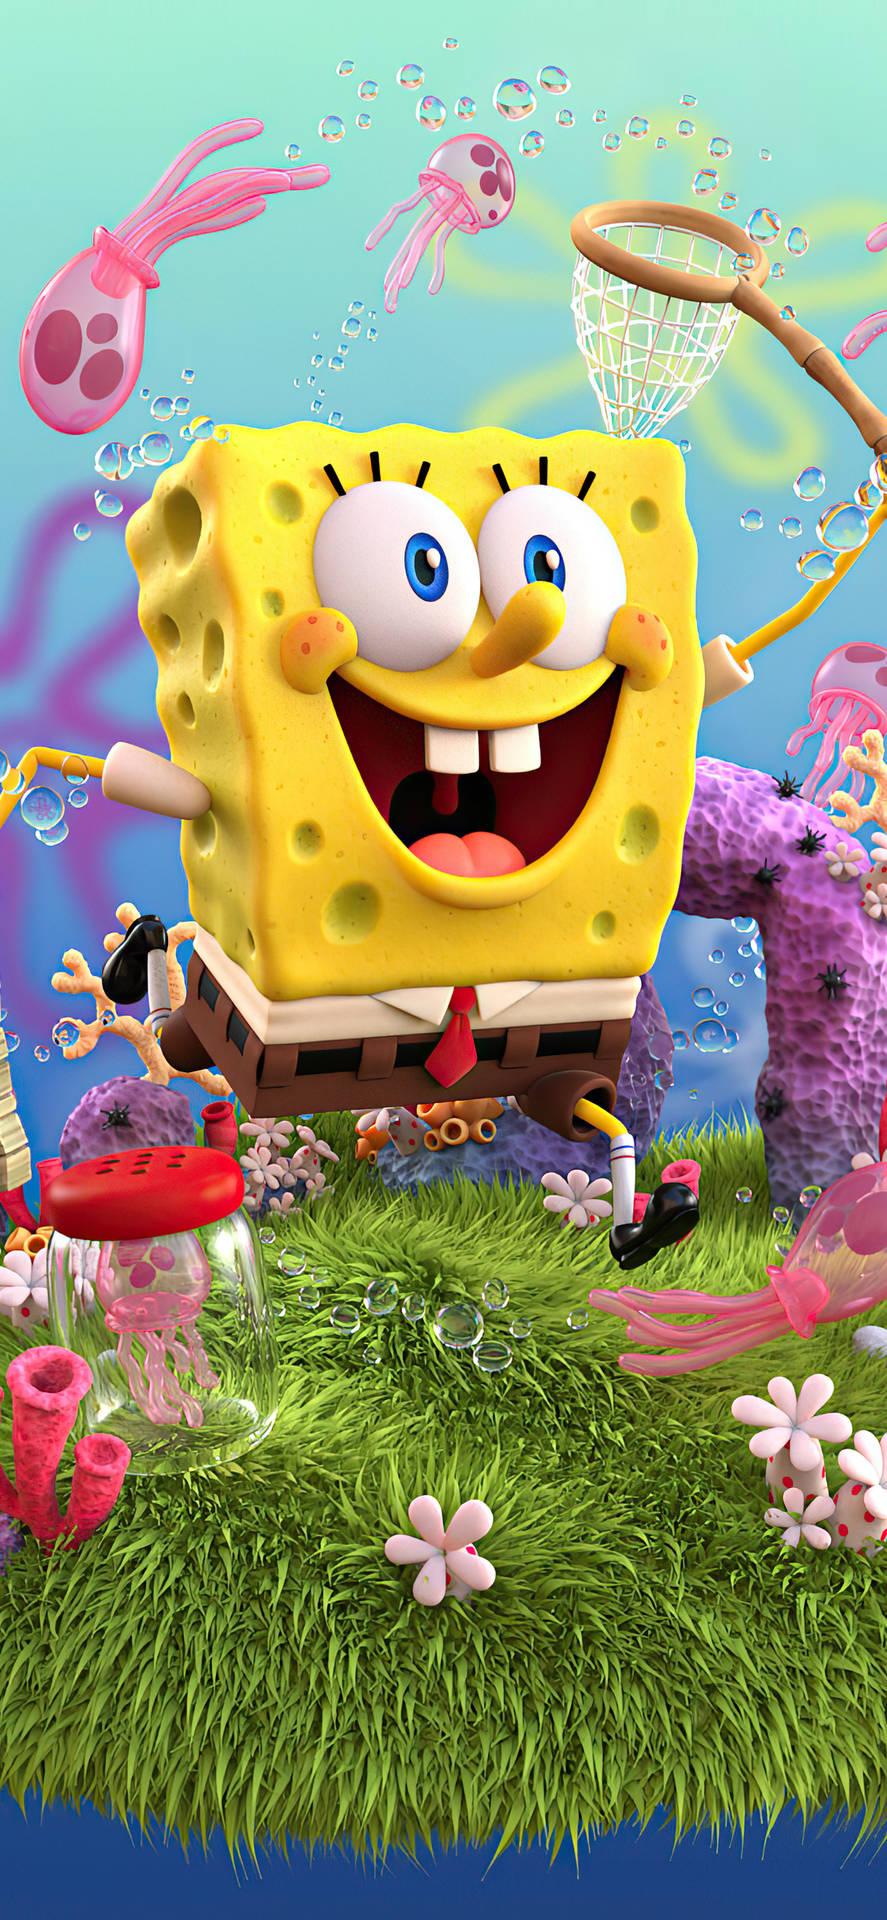 Hình nền 3D của nhân vật Spongebob cho Iphone X: Tải ngay hình nền 3D của nhân vật Spongebob thân yêu cho điện thoại Iphone X của bạn, và tận hưởng cảm giác vui nhộn và hạnh phúc tột độ. Hình ảnh này sẽ làm bạn cười nắm bắt lúc nào, với sự mạnh mẽ và độc đáo của Spongebob.